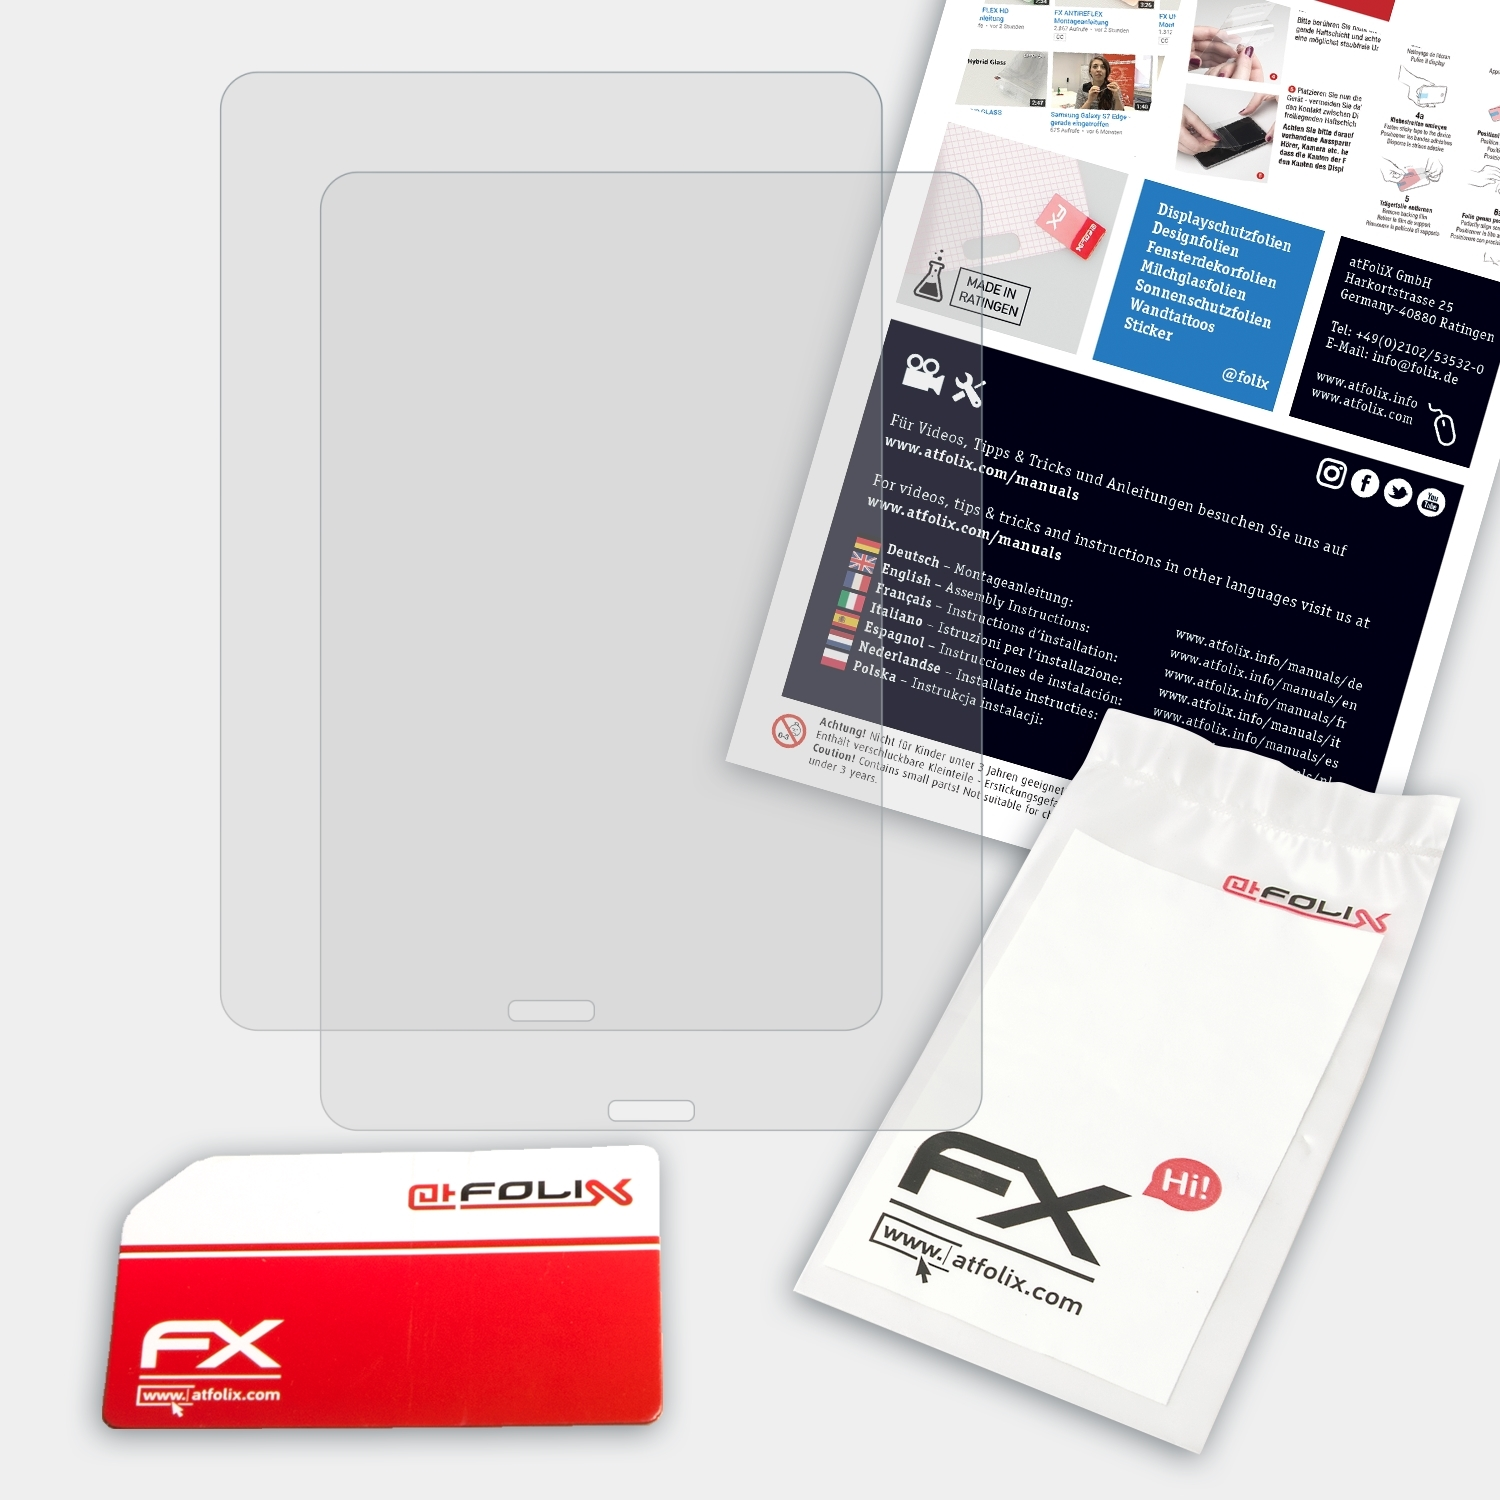 FX-Antireflex ATFOLIX BOOX 2x Displayschutz(für Nova2)